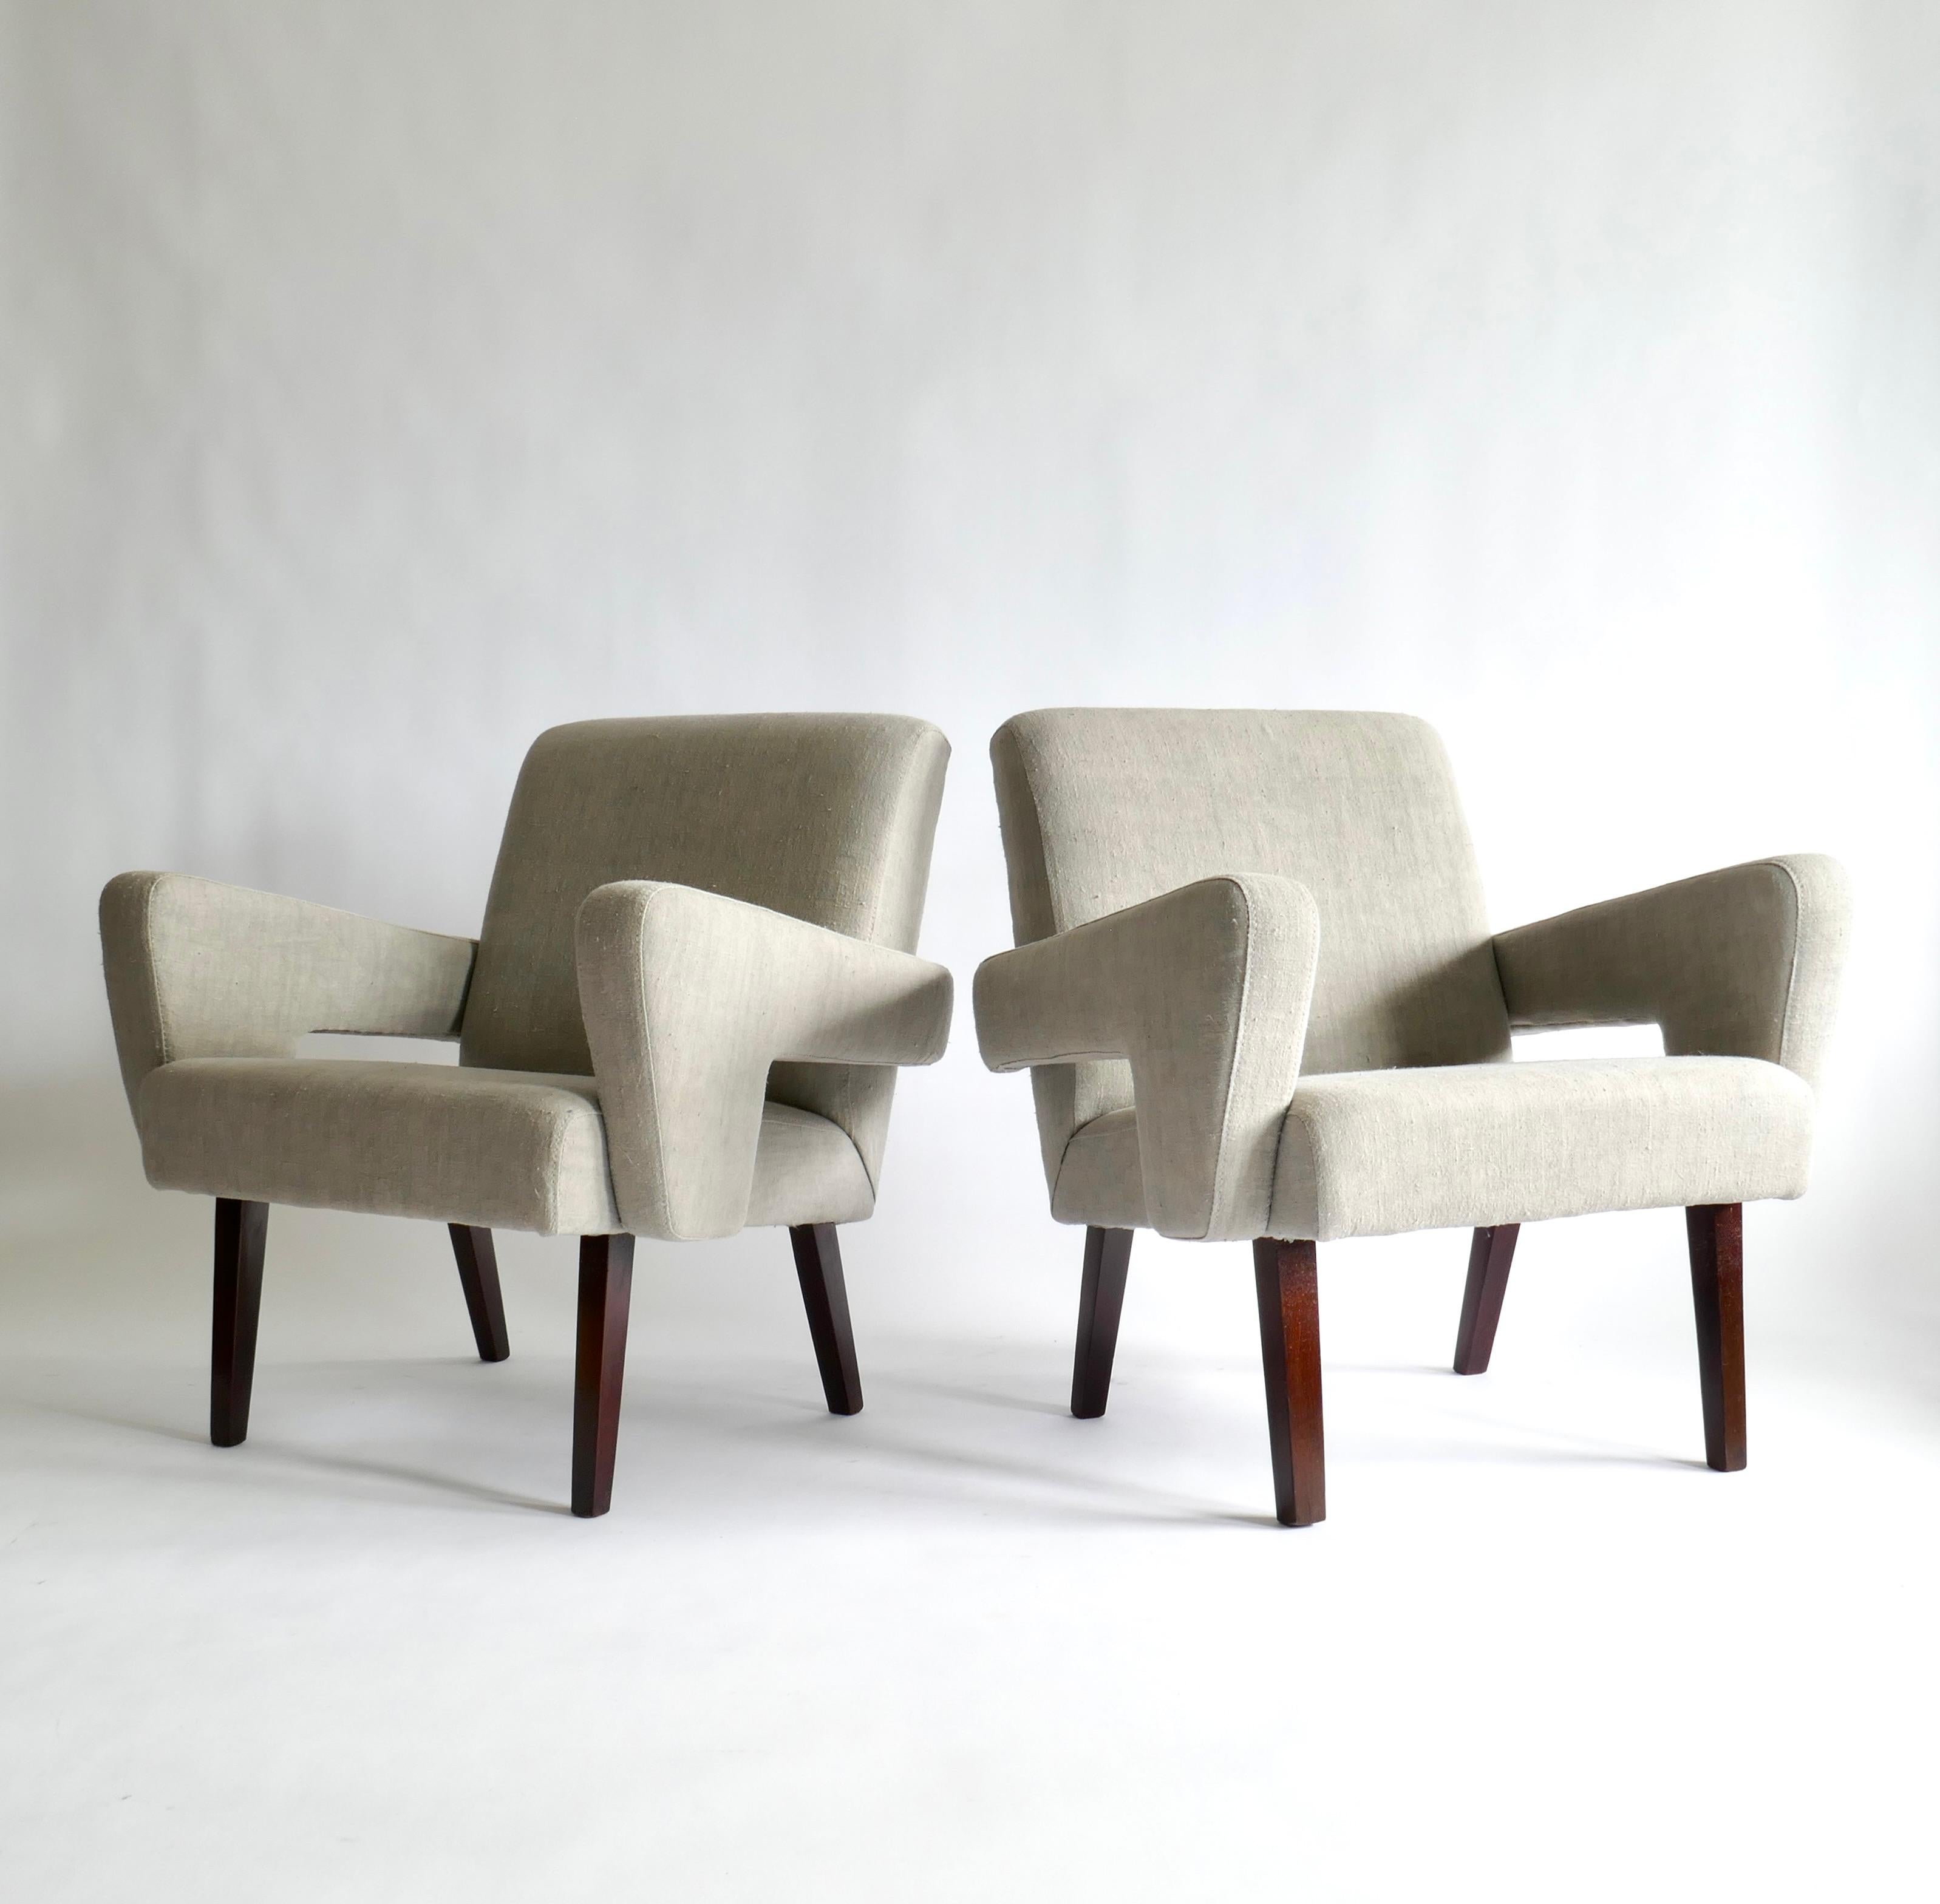 Le brutalisme est un style qui met l'accent sur les matériaux, les textures et la construction, produisant des formes très expressives comme dans cette paire de fauteuils aux formes carrées définies. Tapissé d'un magnifique lin français vintage gris